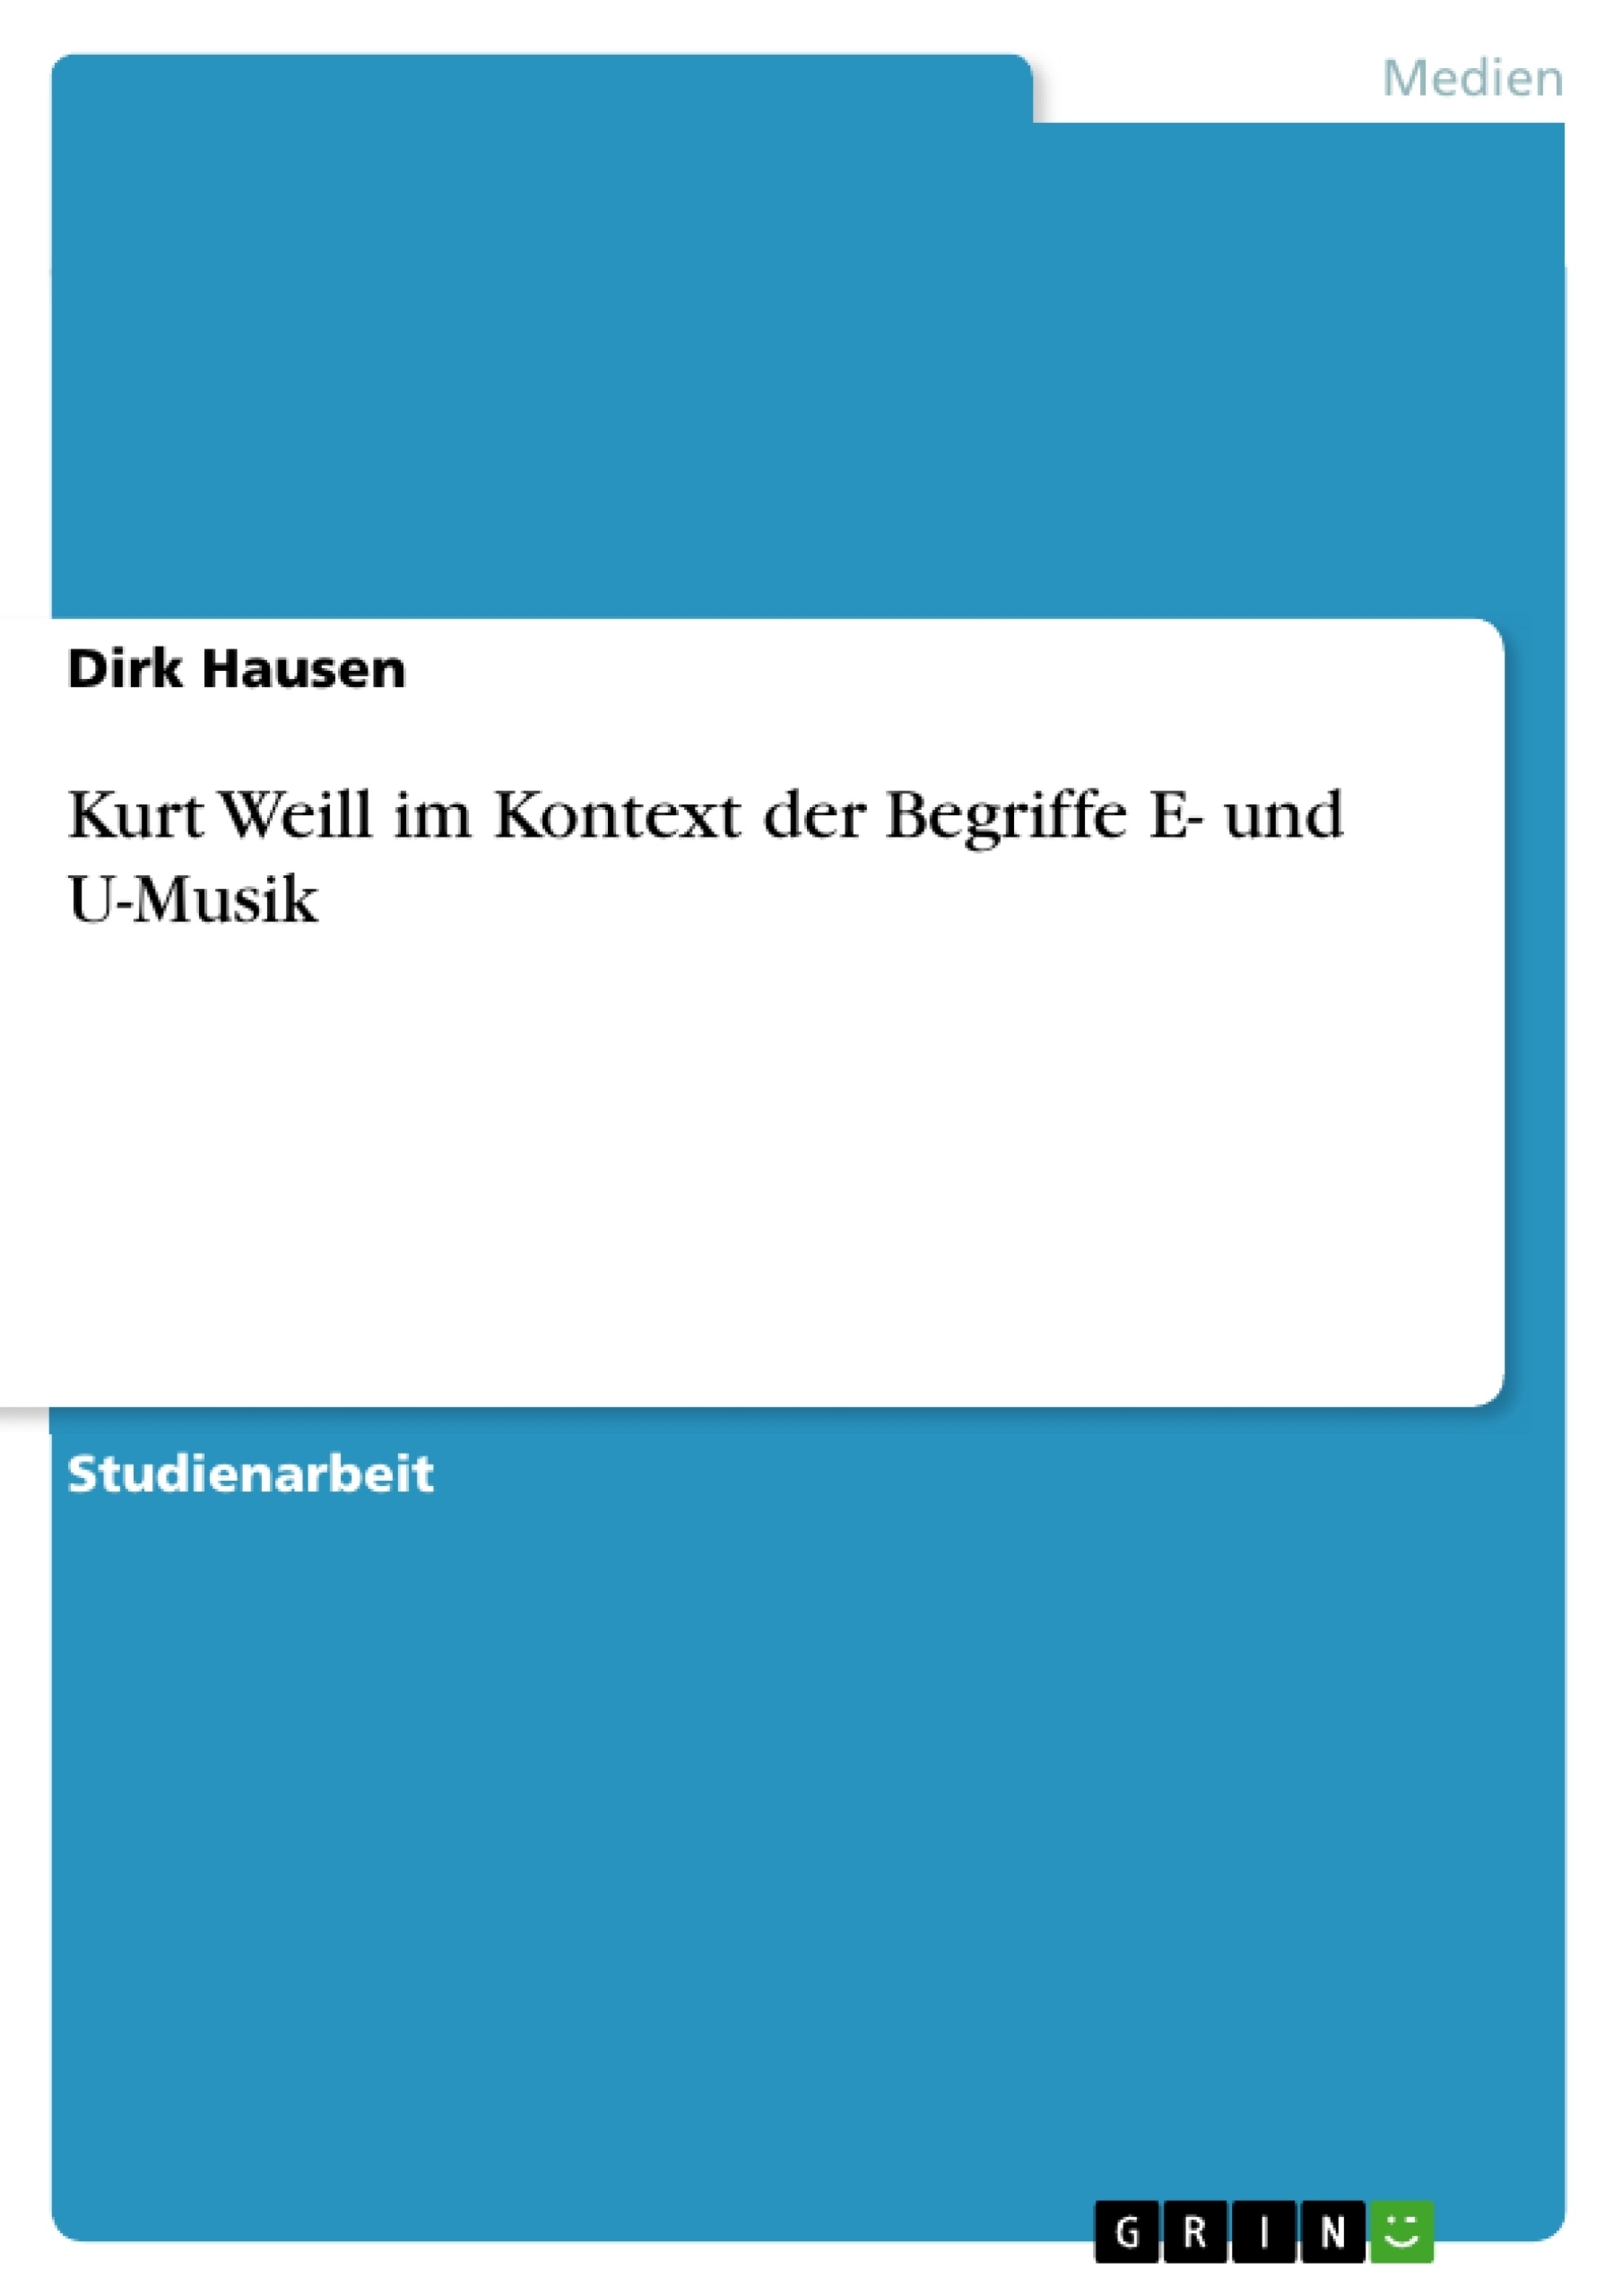 Título: Kurt Weill im Kontext der Begriffe E- und U-Musik